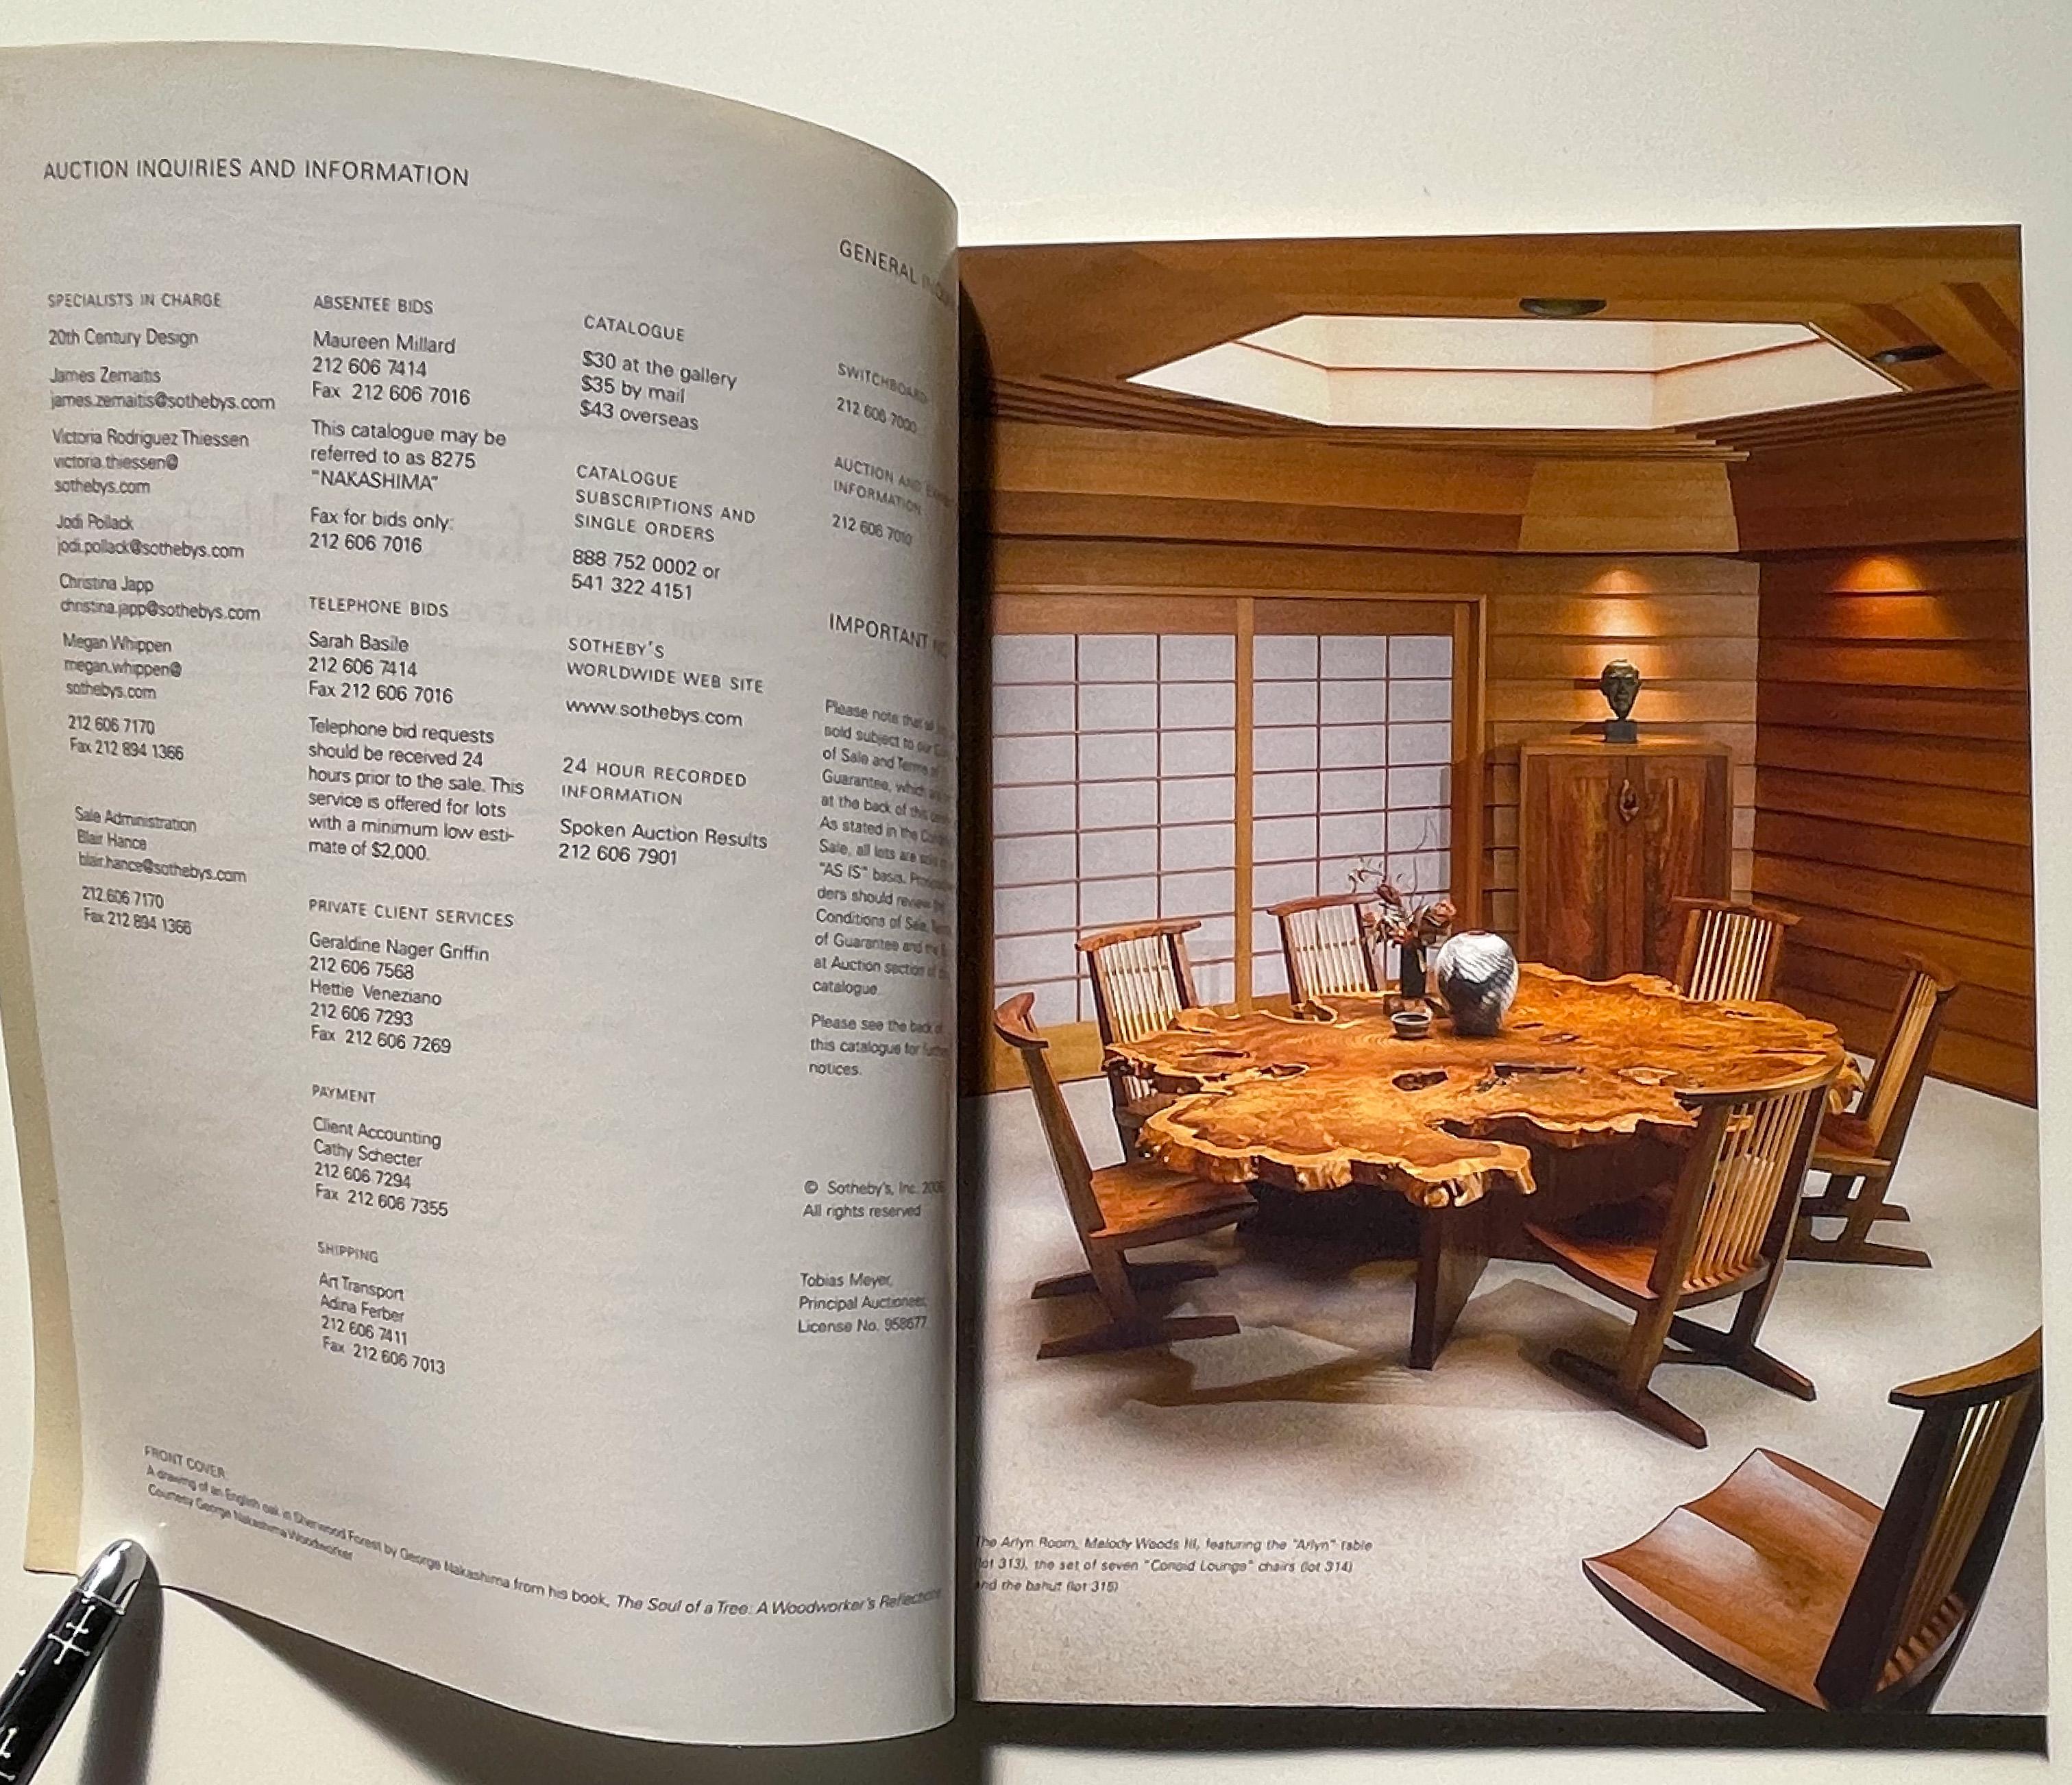 Katalog einer Versteigerung bei Sotheby's, New York, am 15. Dezember 2006, bei der die Möbel- und Beleuchtungskollektion von Arthur und Evelyn Krosnick von George Nakashima präsentiert wurde. Es handelt sich dabei um die zweite Kollektion, da die